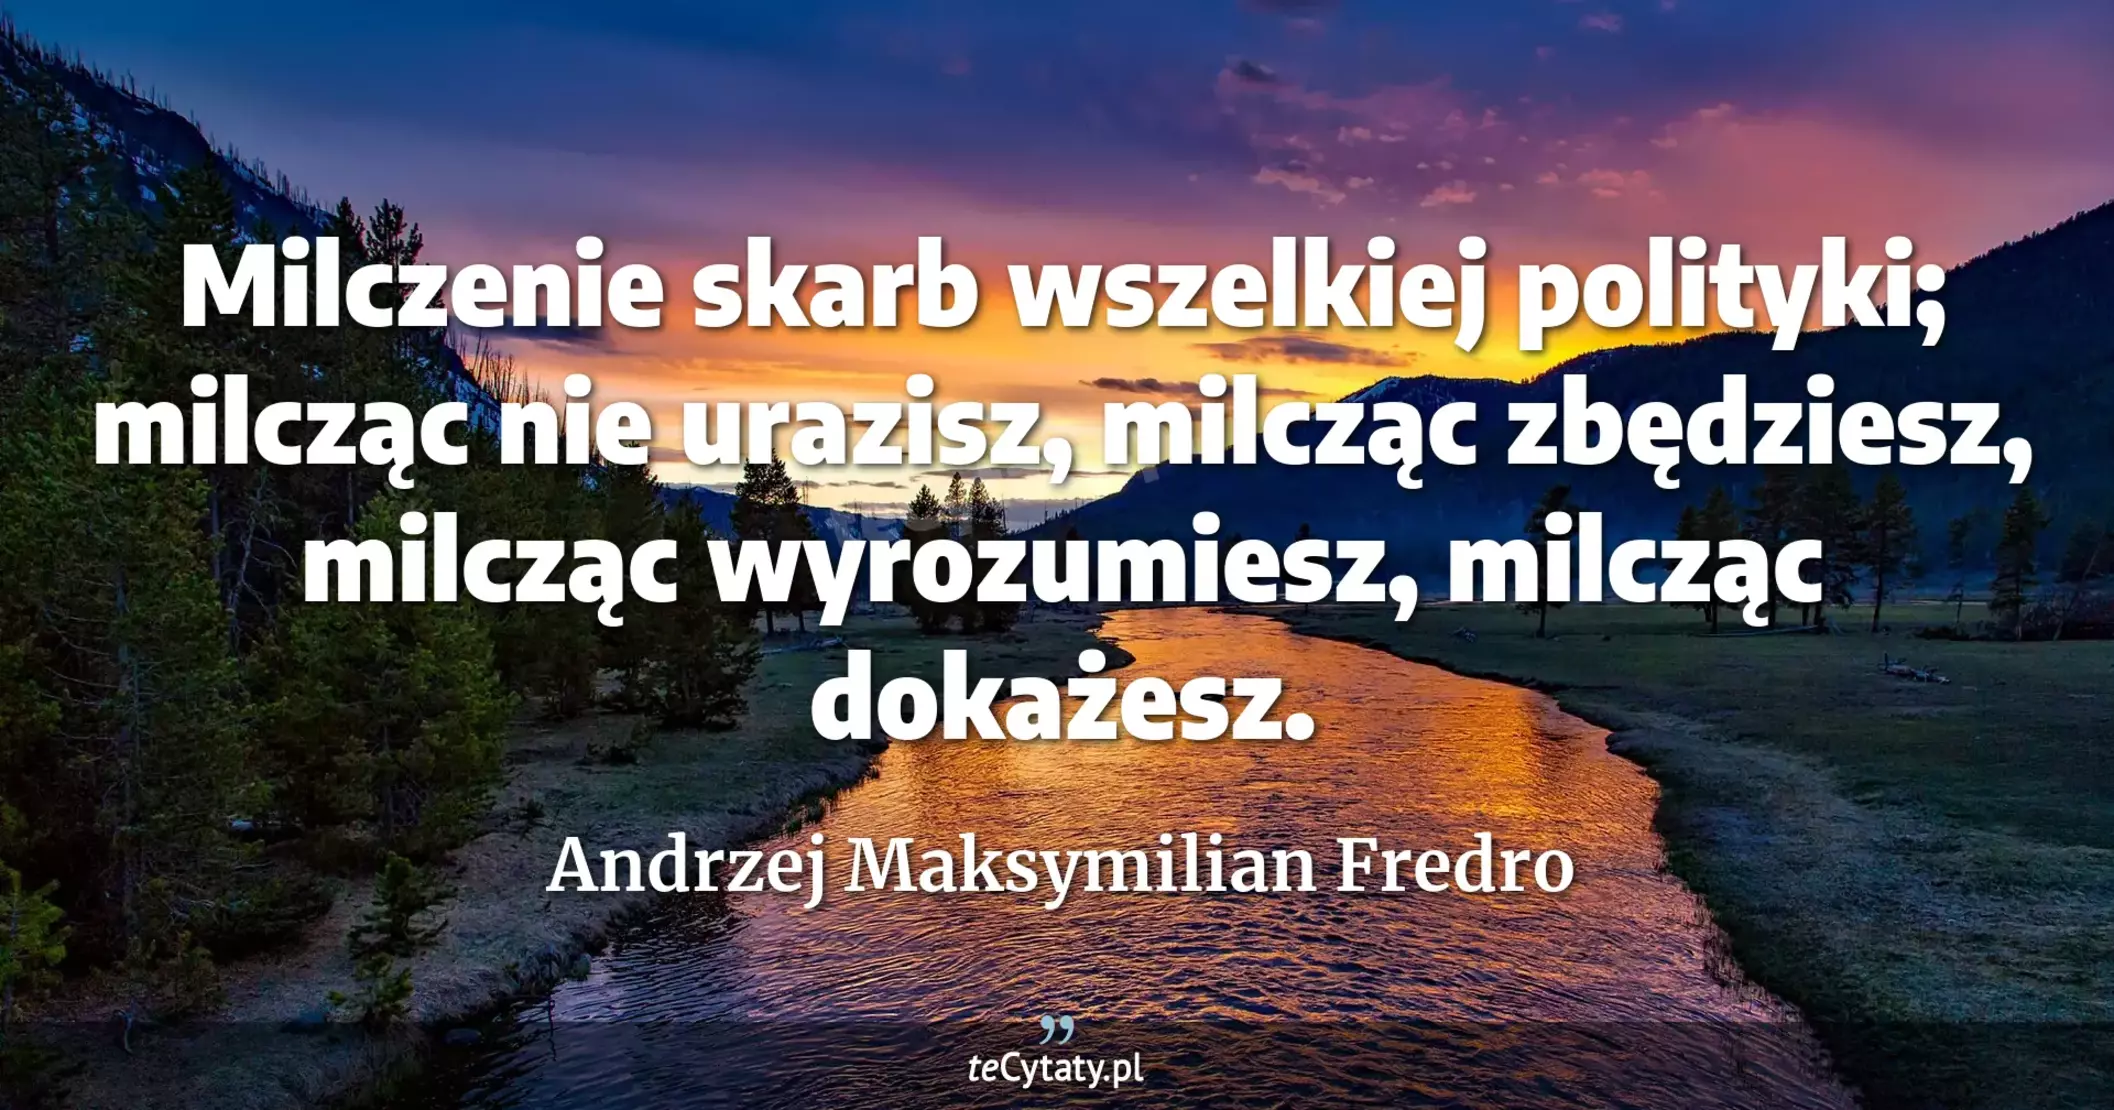 Milczenie skarb wszelkiej polityki; milcząc nie urazisz, milcząc zbędziesz, milcząc wyrozumiesz, milcząc dokażesz. - Andrzej Maksymilian Fredro